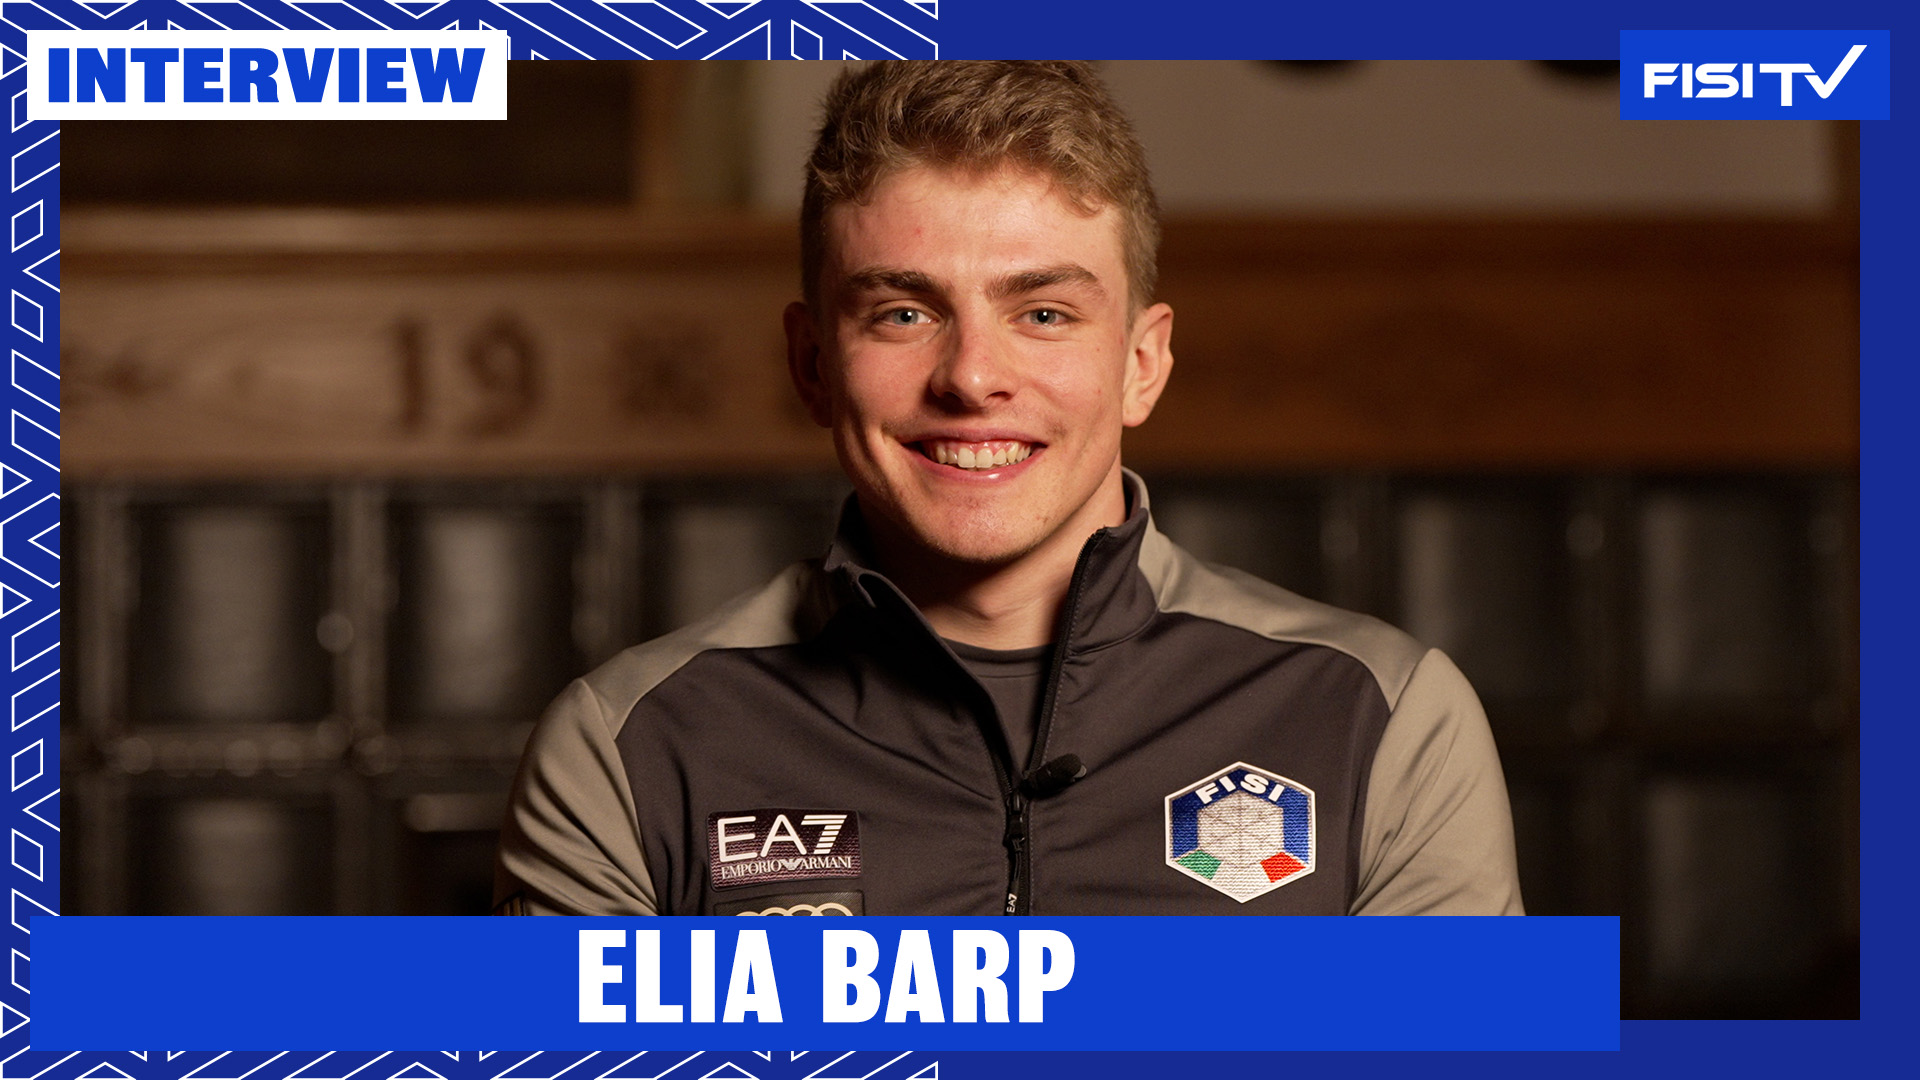 Elia Barp | “Sono contento di come sta andando, vediamo di fare sempre meglio” | FISI TV